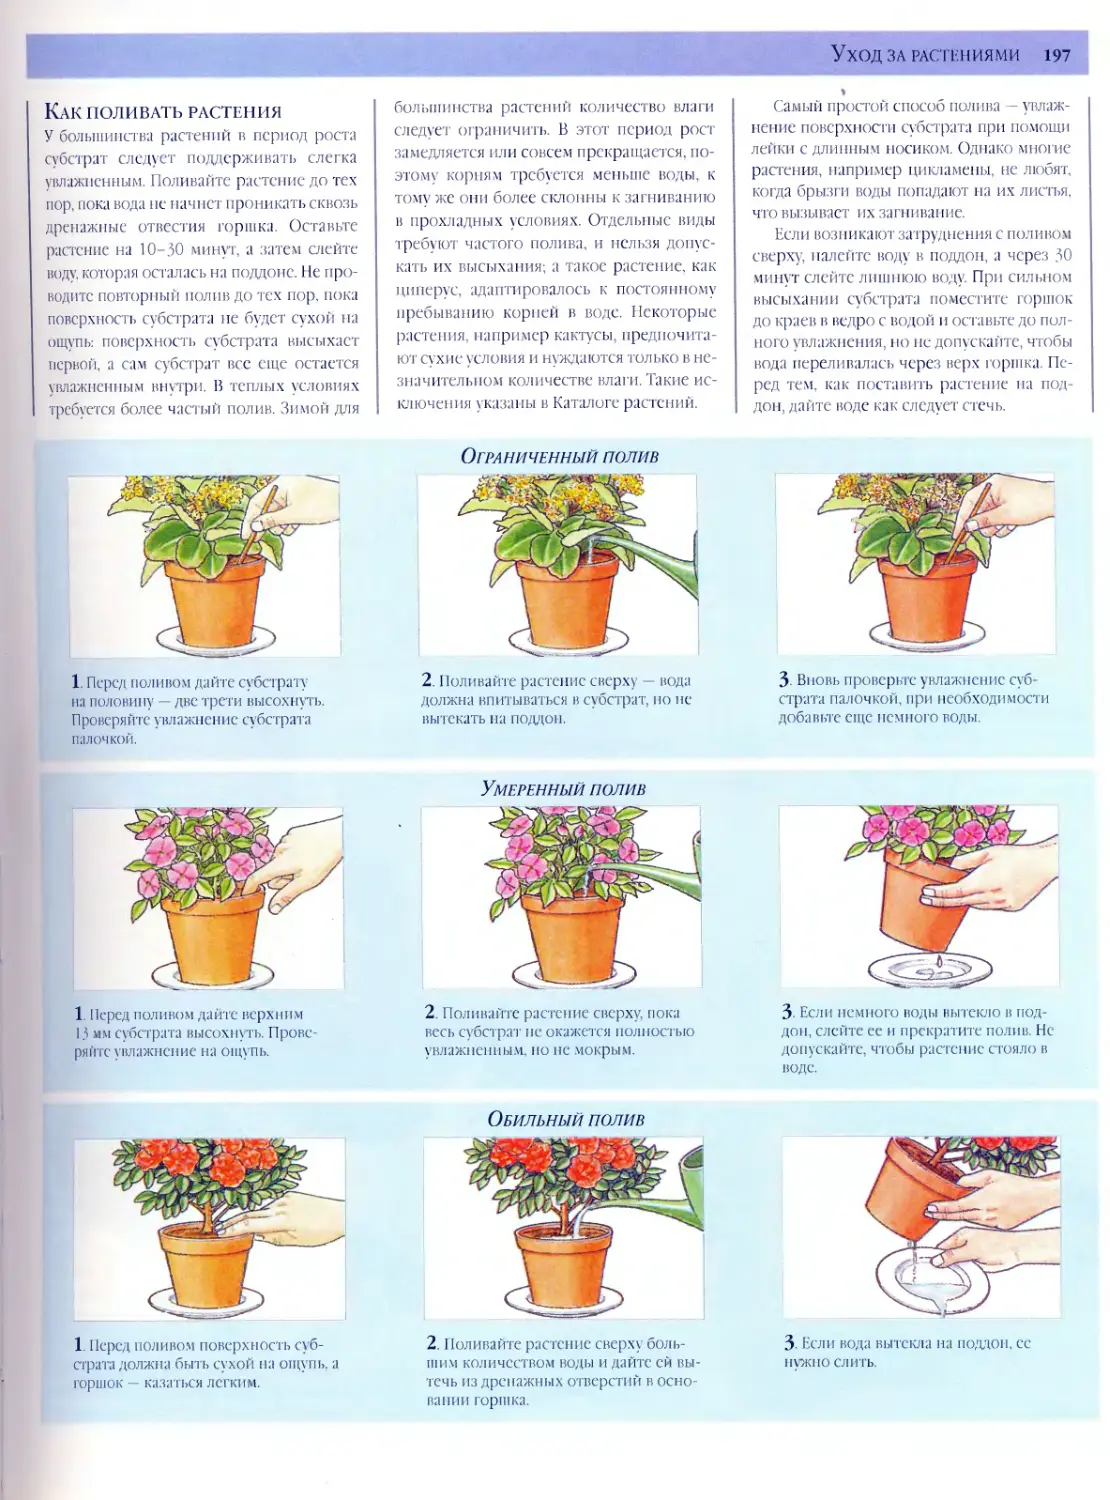 Правильный полив комнатных растений | flowery-blog